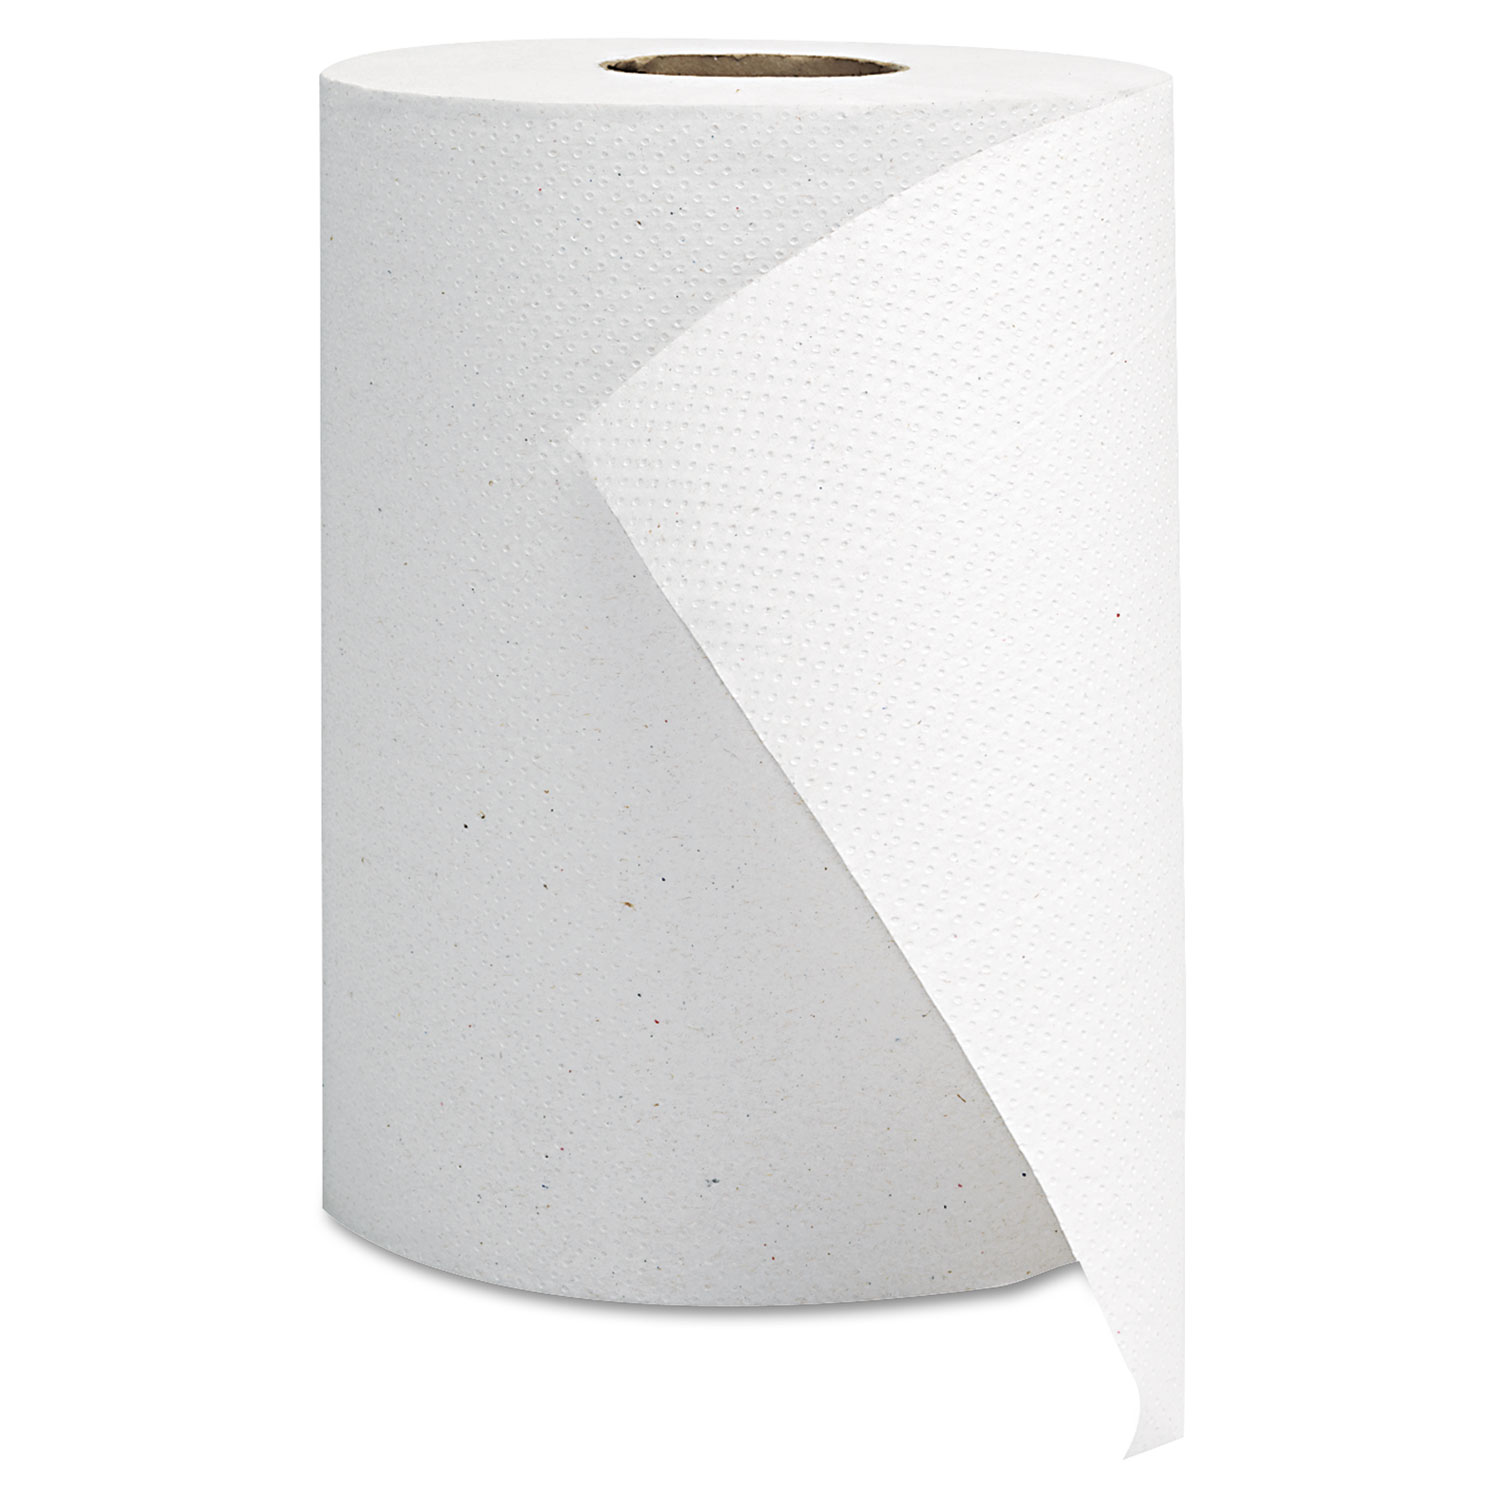 GEN Hardwound Roll Towels - White, 8